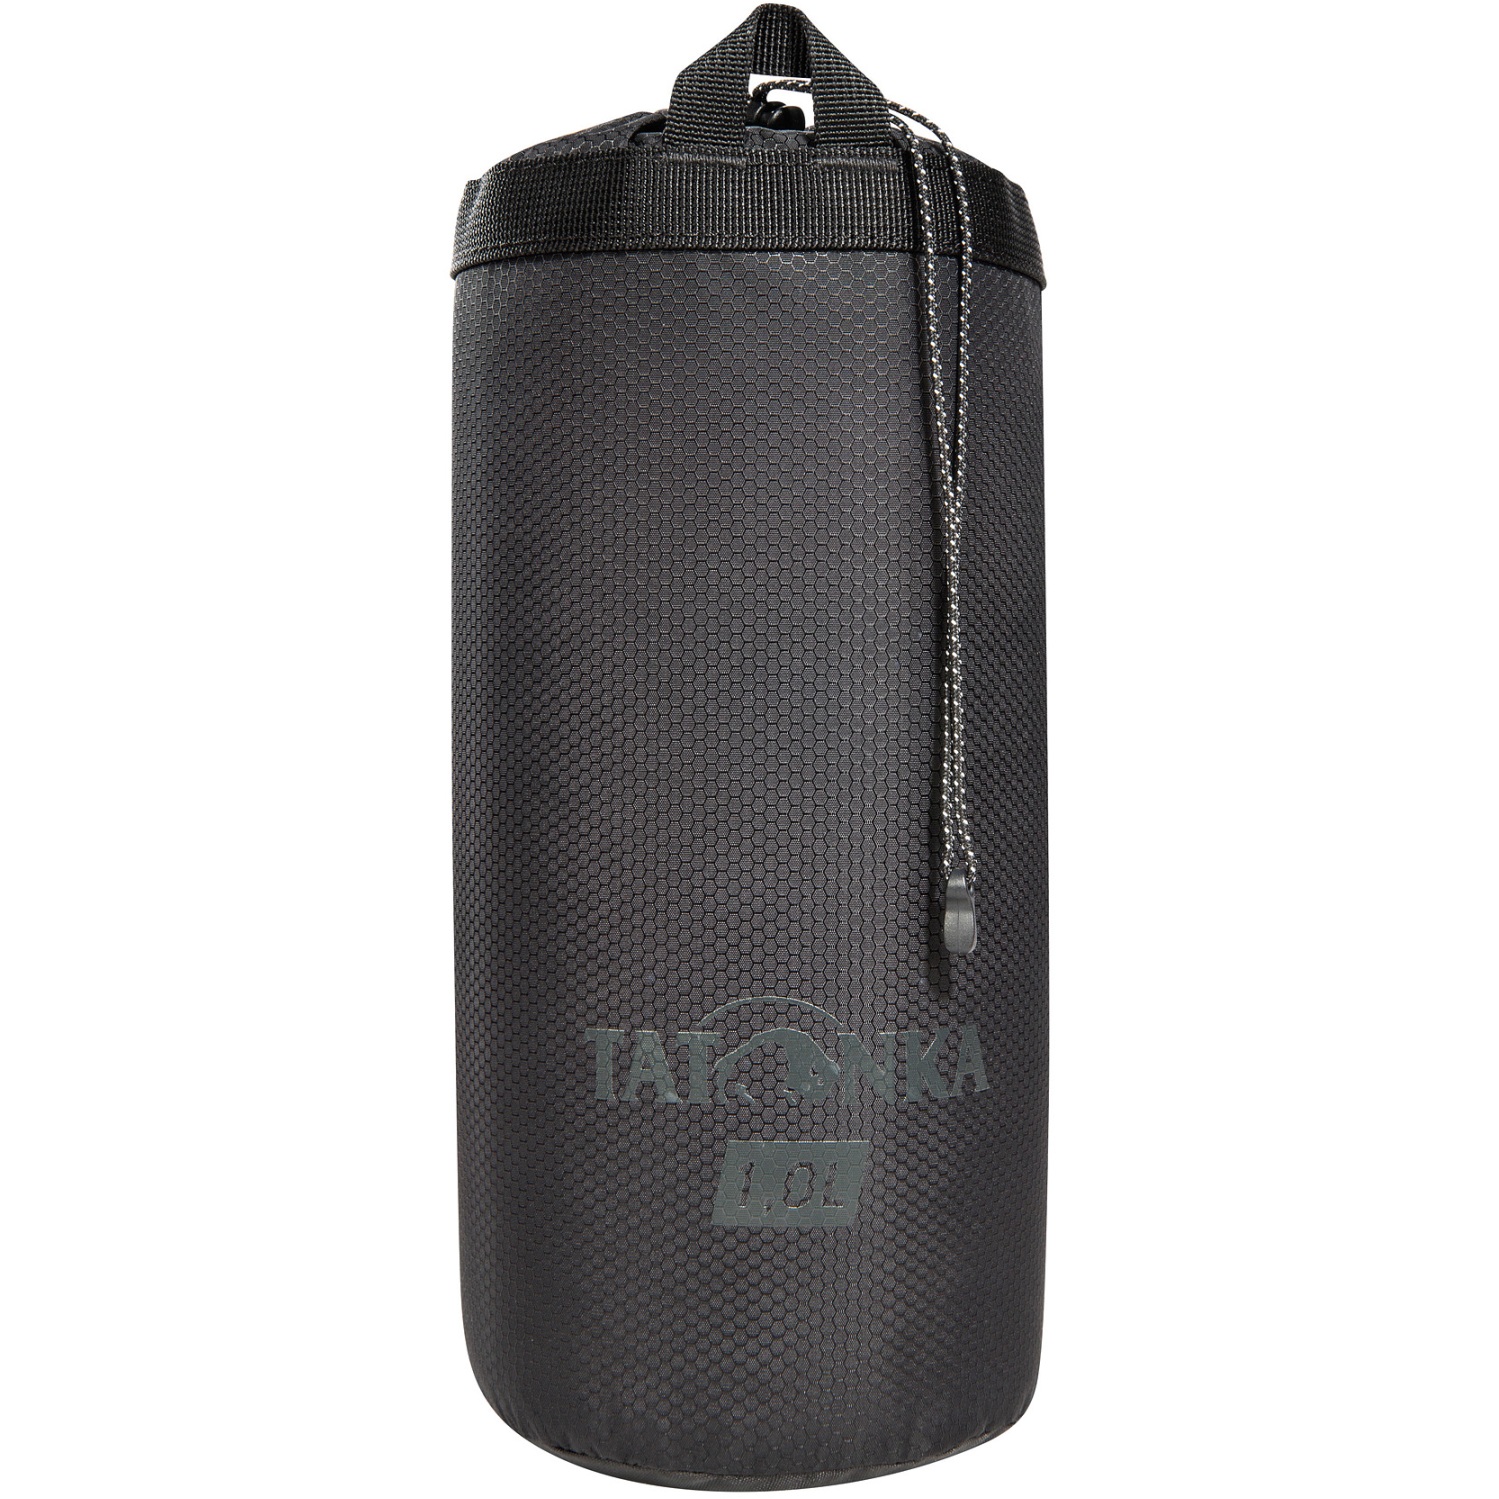 Productfoto van Tatonka Thermo Bottle Cover 1L - black